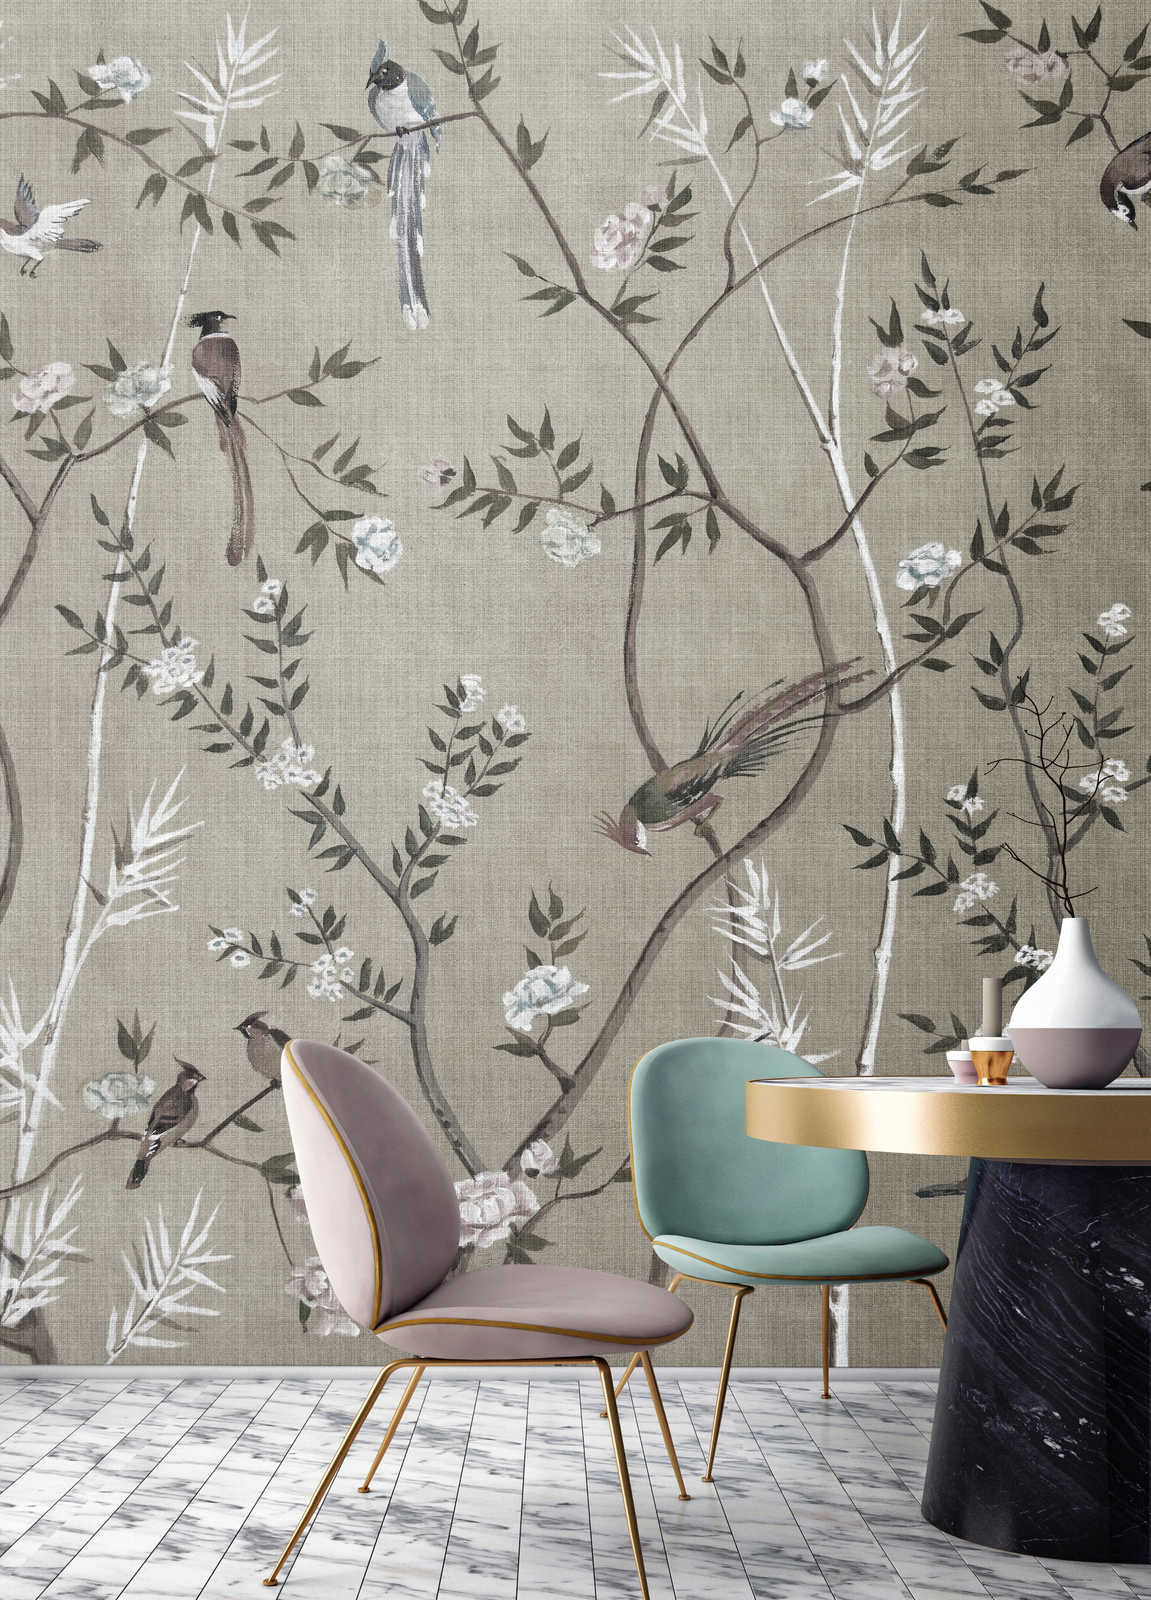             Tea Room 2 - Behang Birds & Blossoms Design in Greige
        